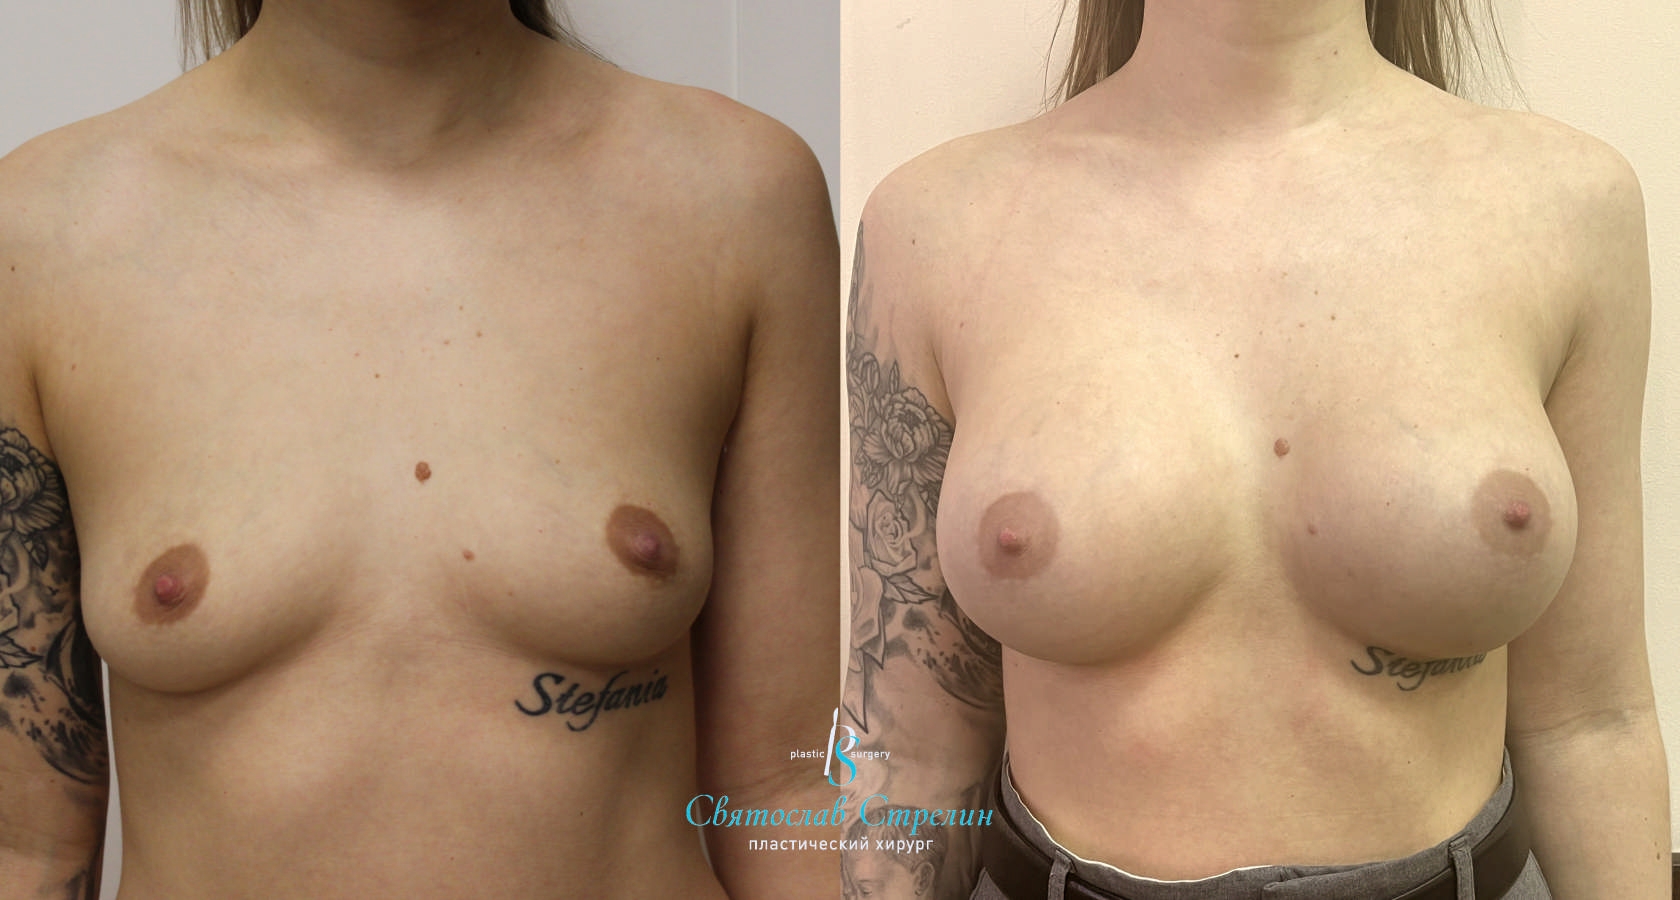 Увеличение груди, 4 месяца после операции, импланты Себбин 370 мл, анатомические, средняяв ысота, высокая проекция, доступ подмышечный